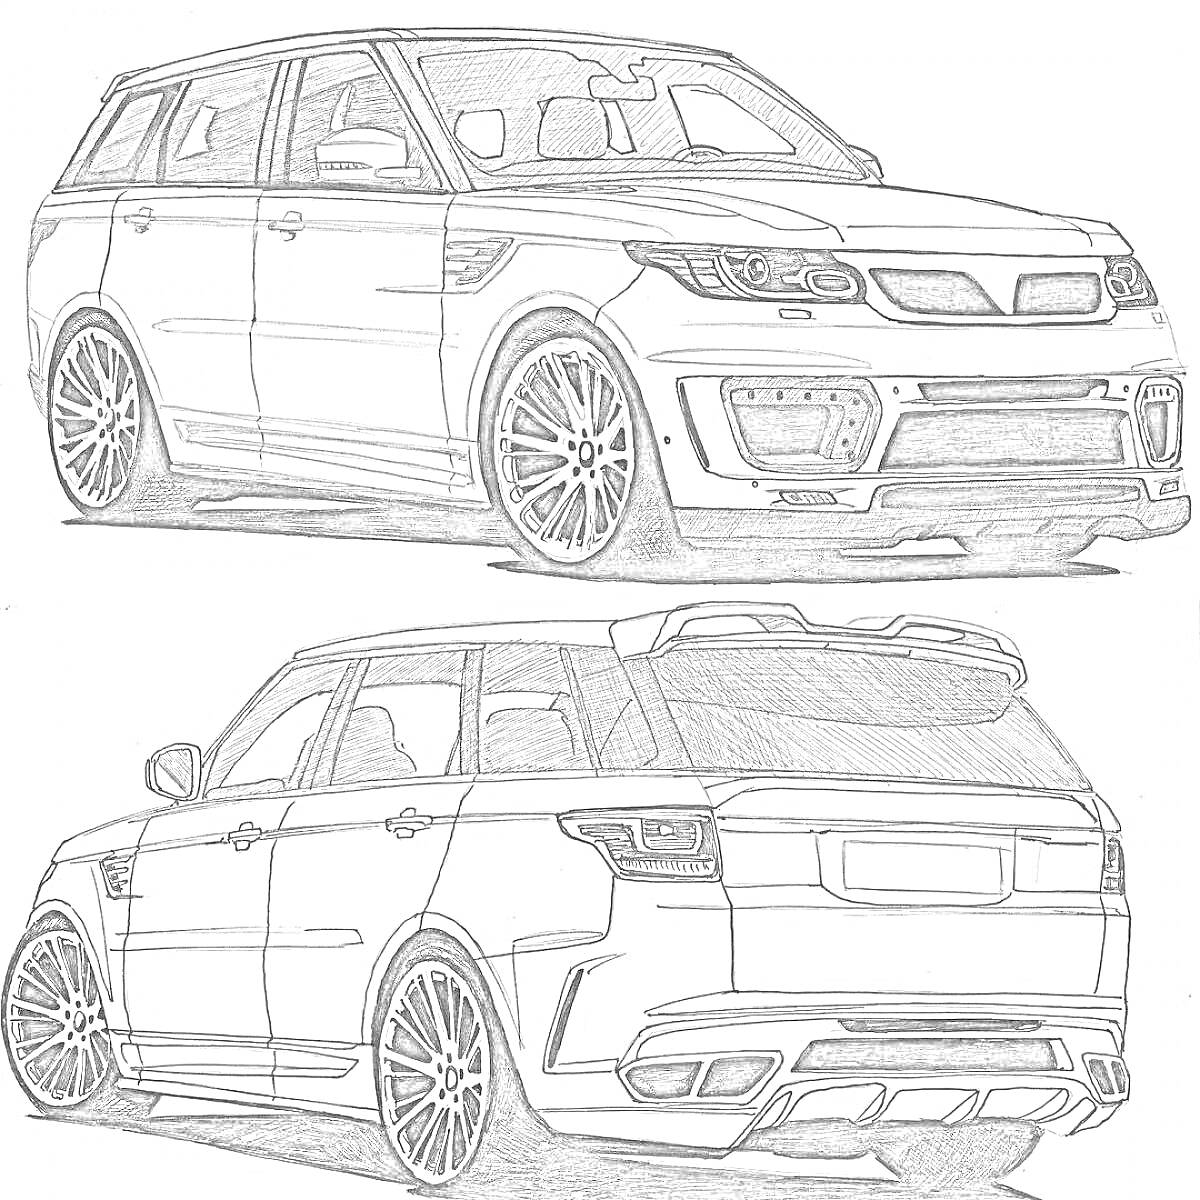 Раскраска Range Rover, рисунок передней и задней частей автомобиля, детали кузова, фары, колеса, боковые зеркала, окна